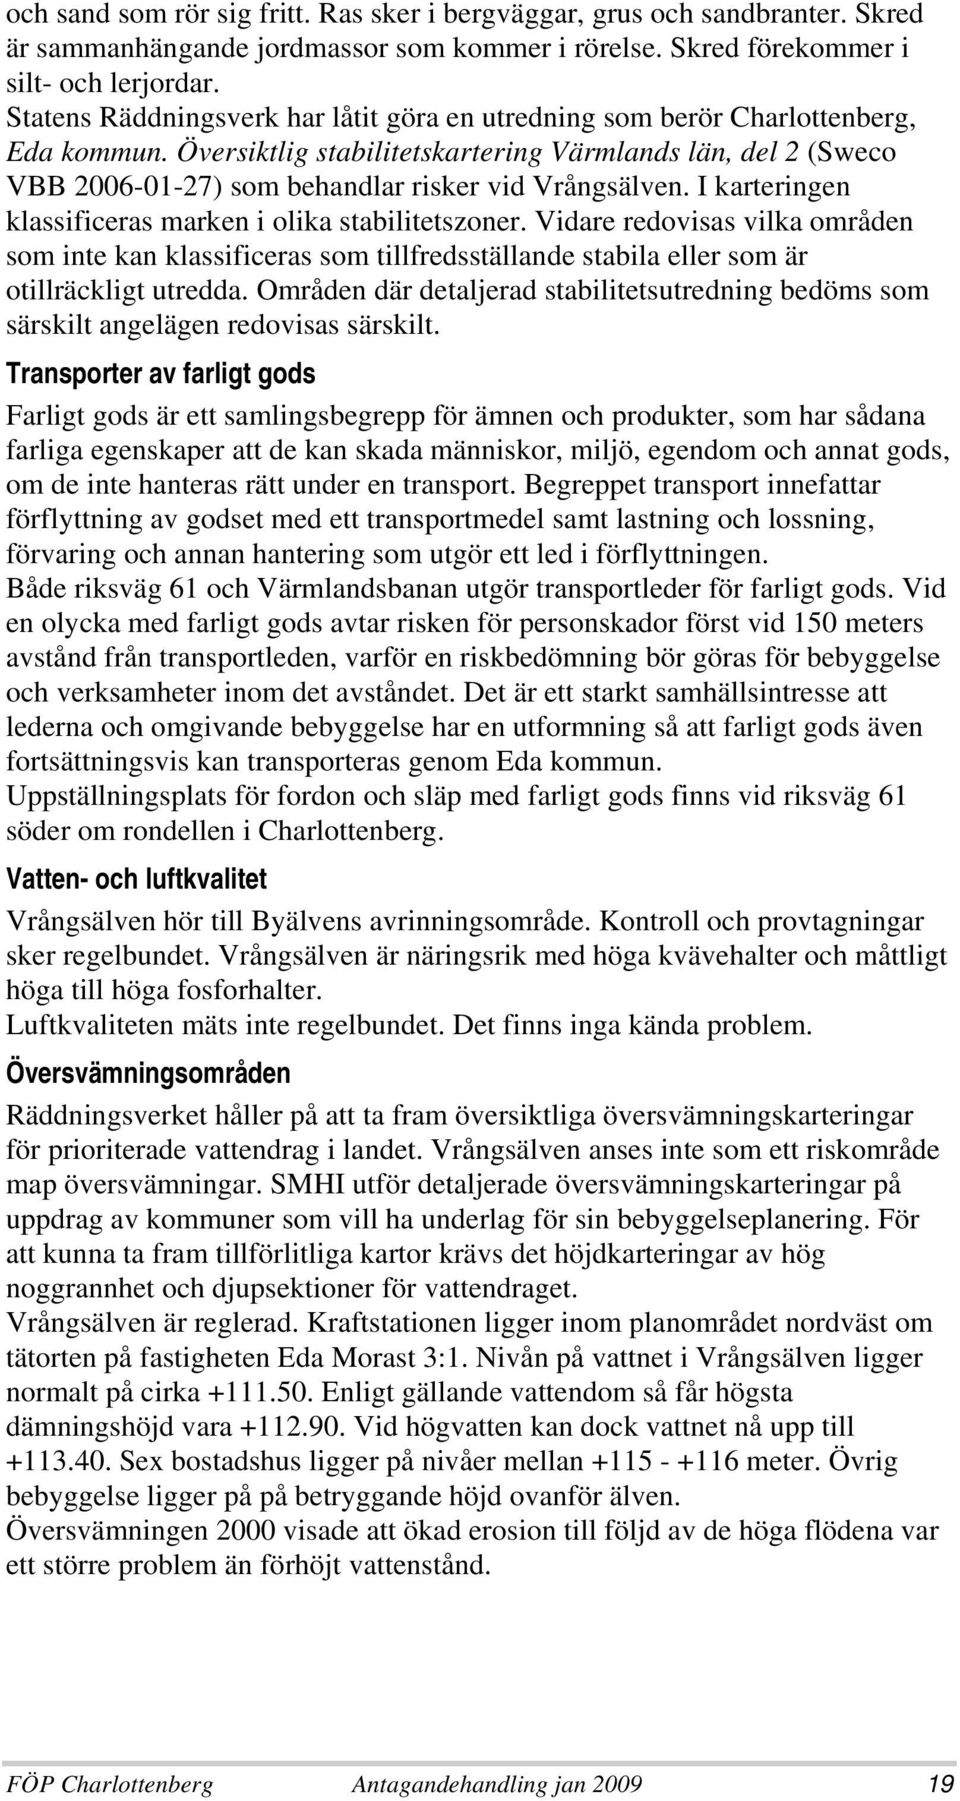 Översiktlig stabilitetskartering Värmlands län, del 2 (Sweco VBB 2006-01-27) som behandlar risker vid Vrångsälven. I karteringen klassificeras marken i olika stabilitetszoner.